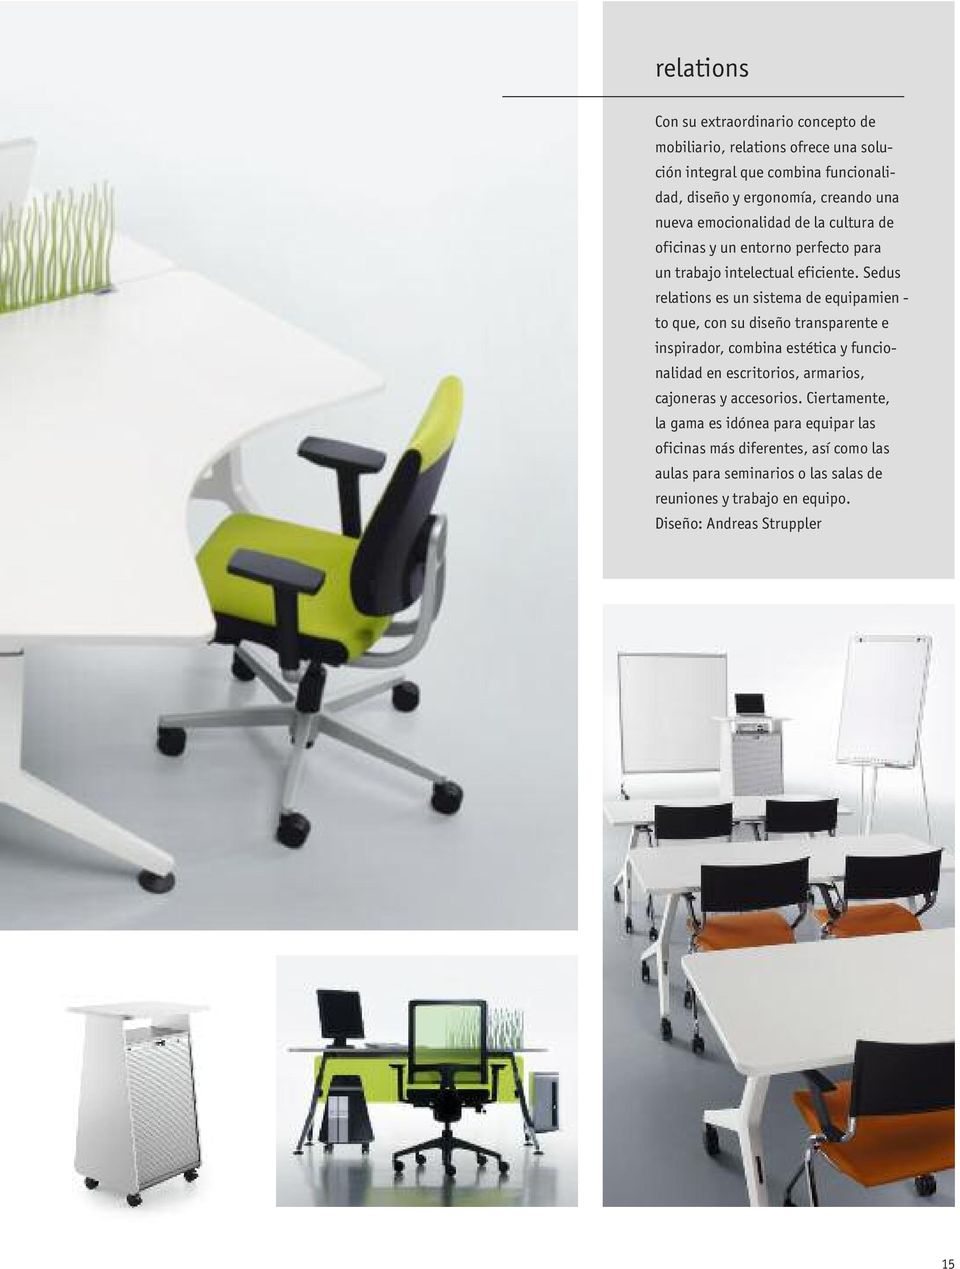 Sedus relations es un sistema de equipamien - to que, con su diseño transparente e inspirador, combina estética y funcionalidad en escritorios, armarios,